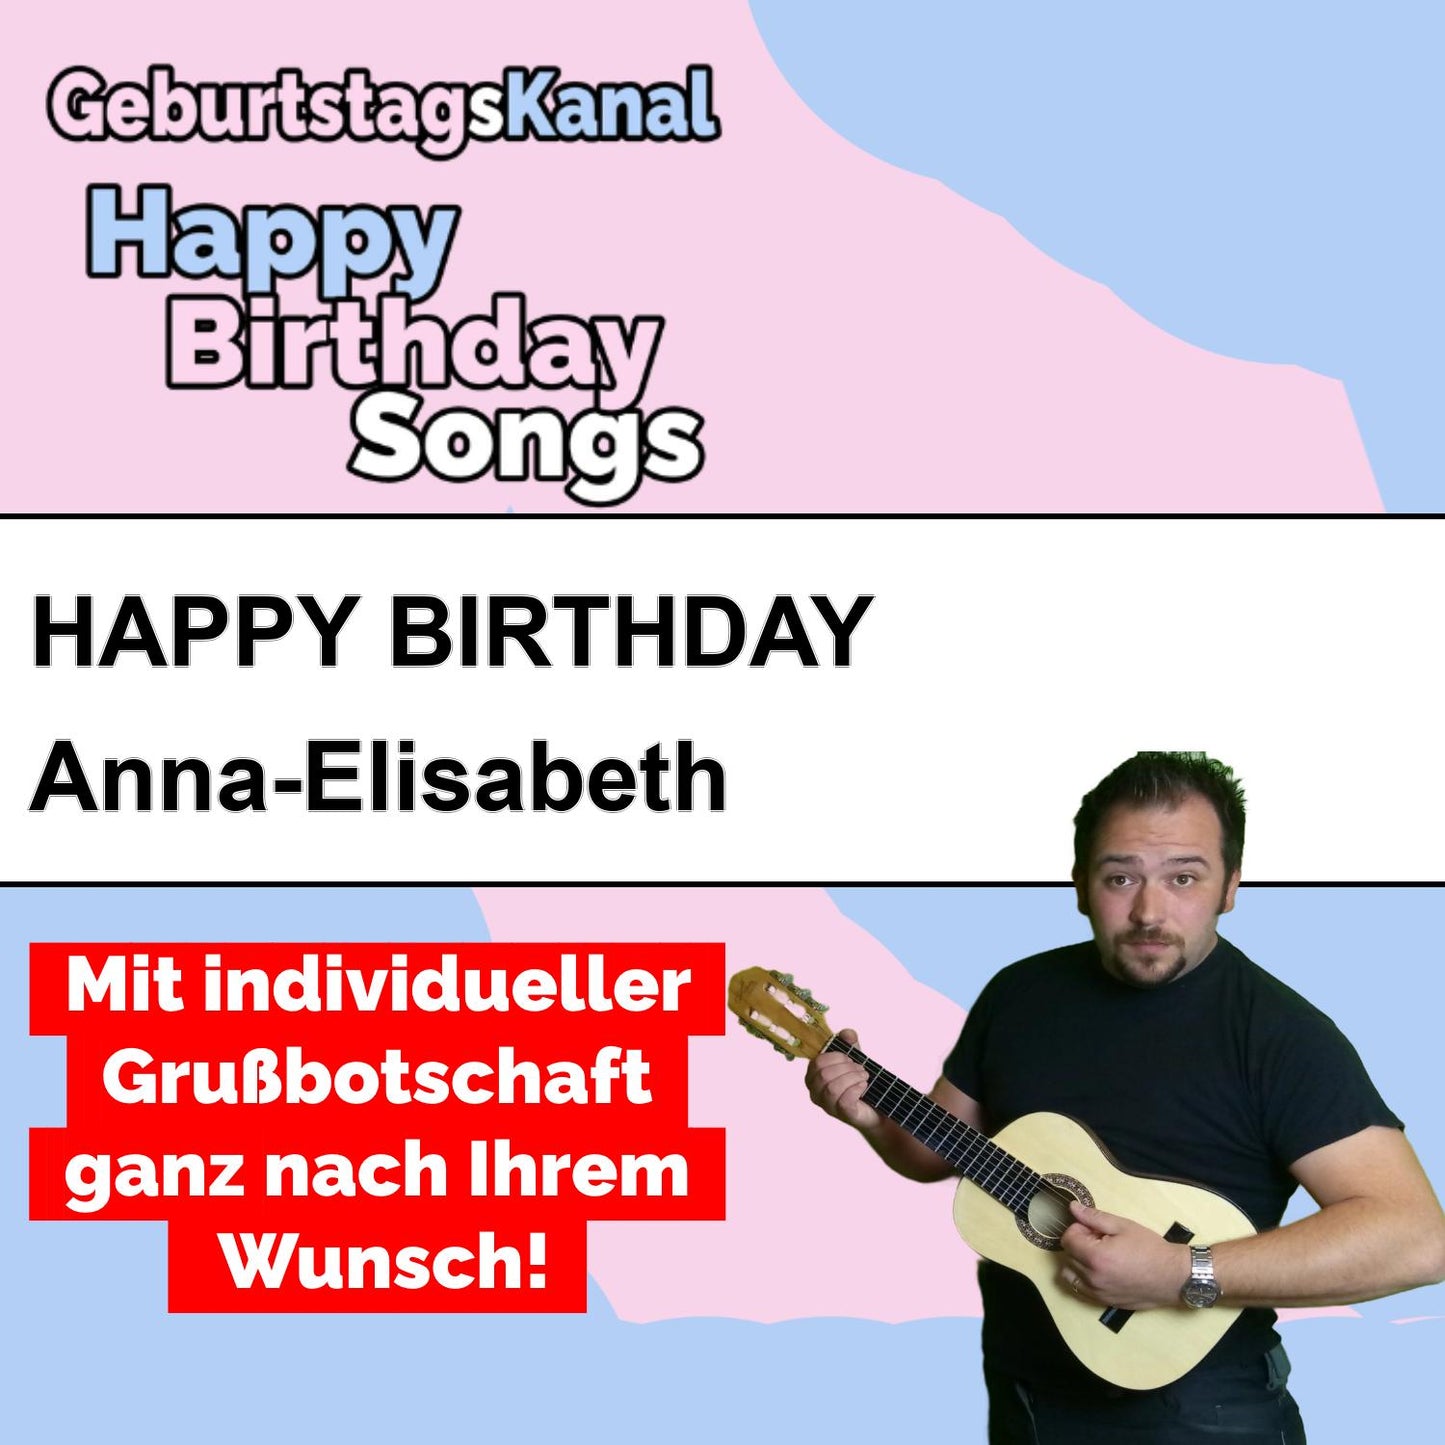 Produktbild Happy Birthday to you Anna-Elisabeth mit Wunschgrußbotschaft